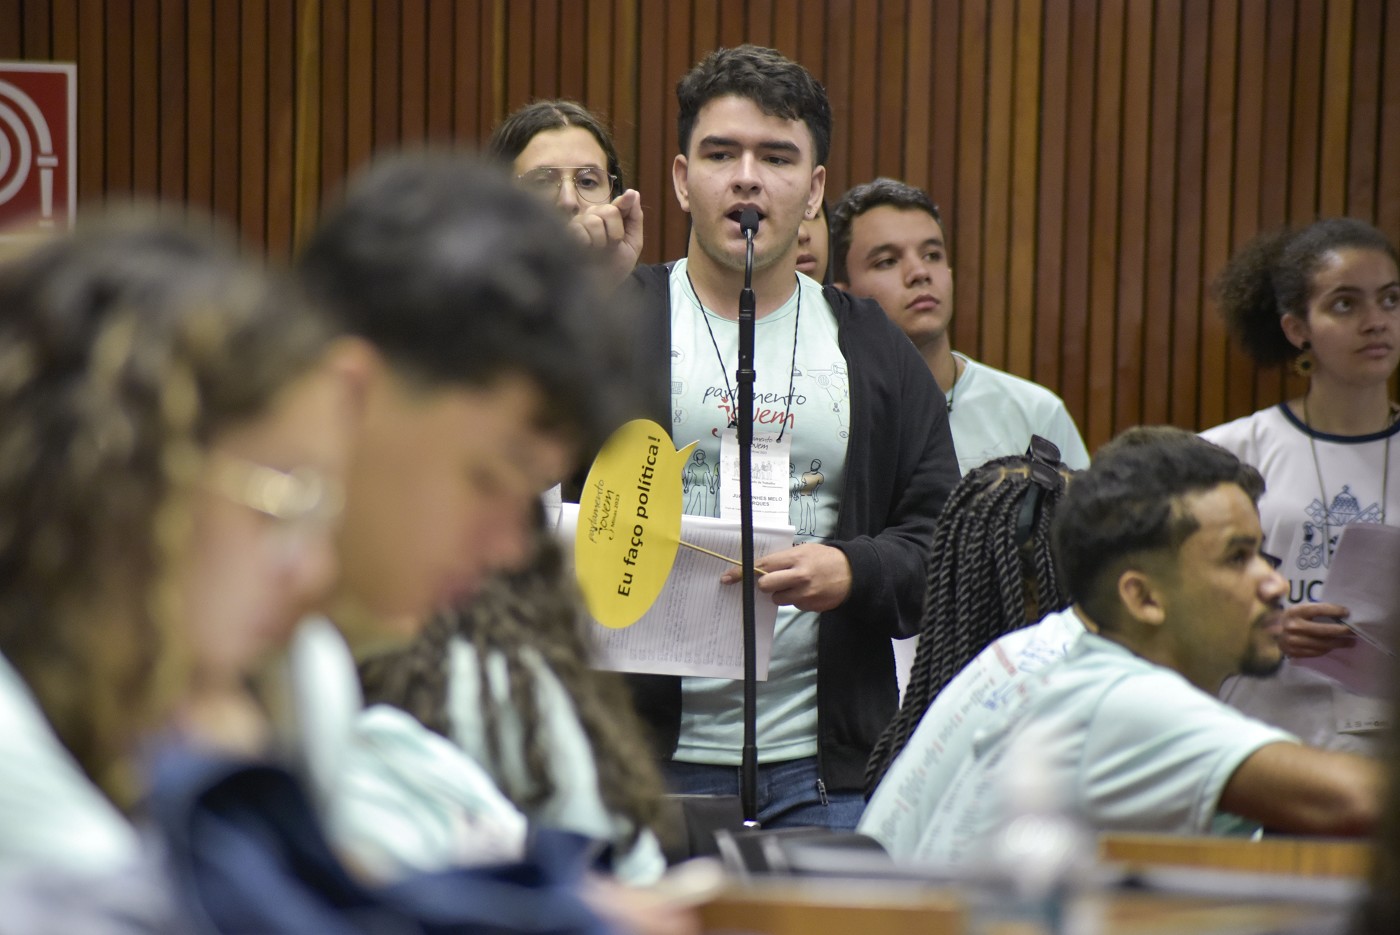 Parlamento Jovem de Minas 2023 - Etapa Estadual - Plenária final